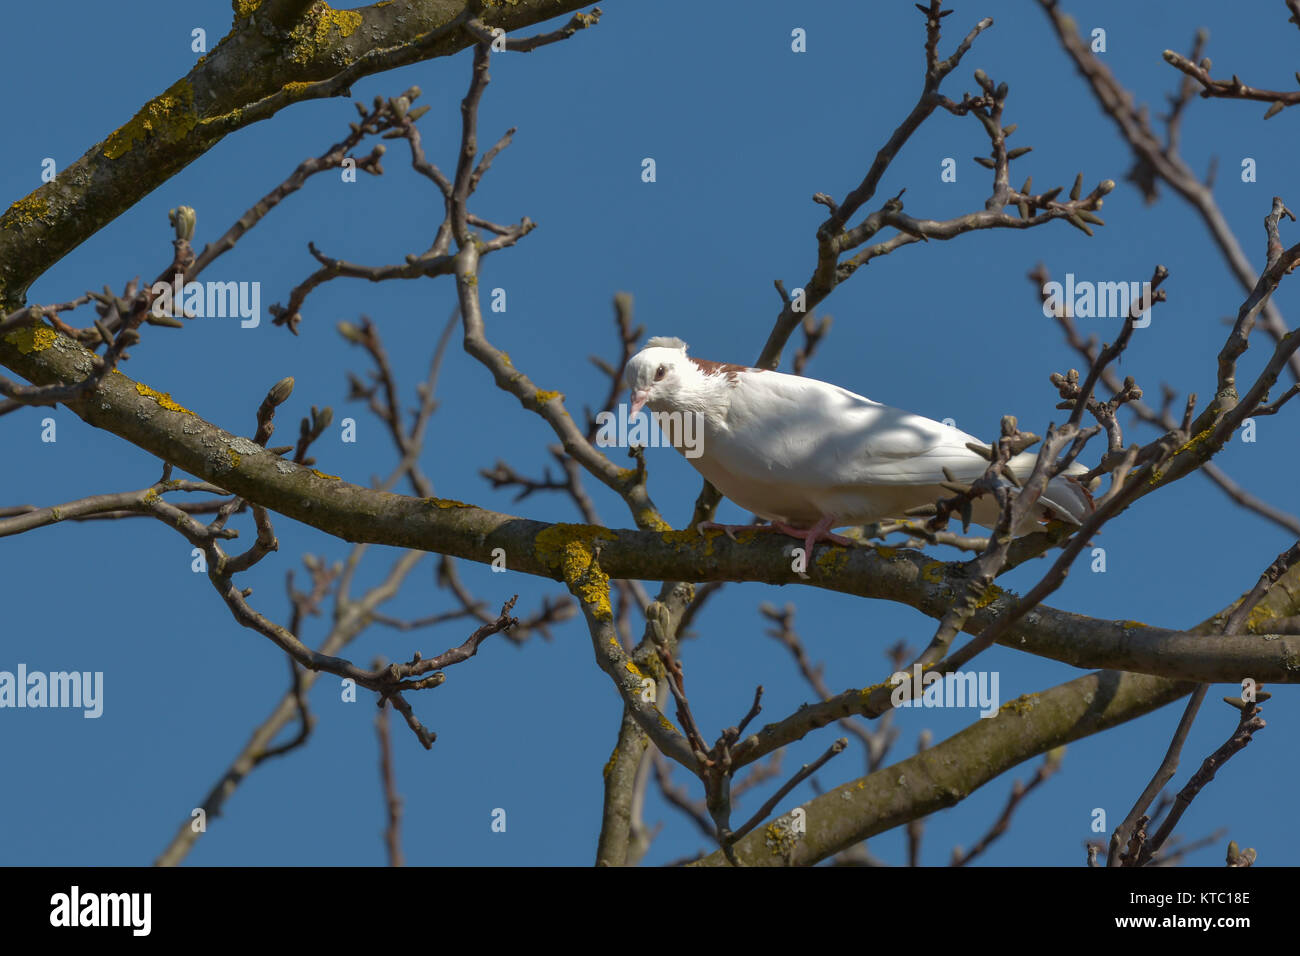 white dove in the bare tree Stock Photo